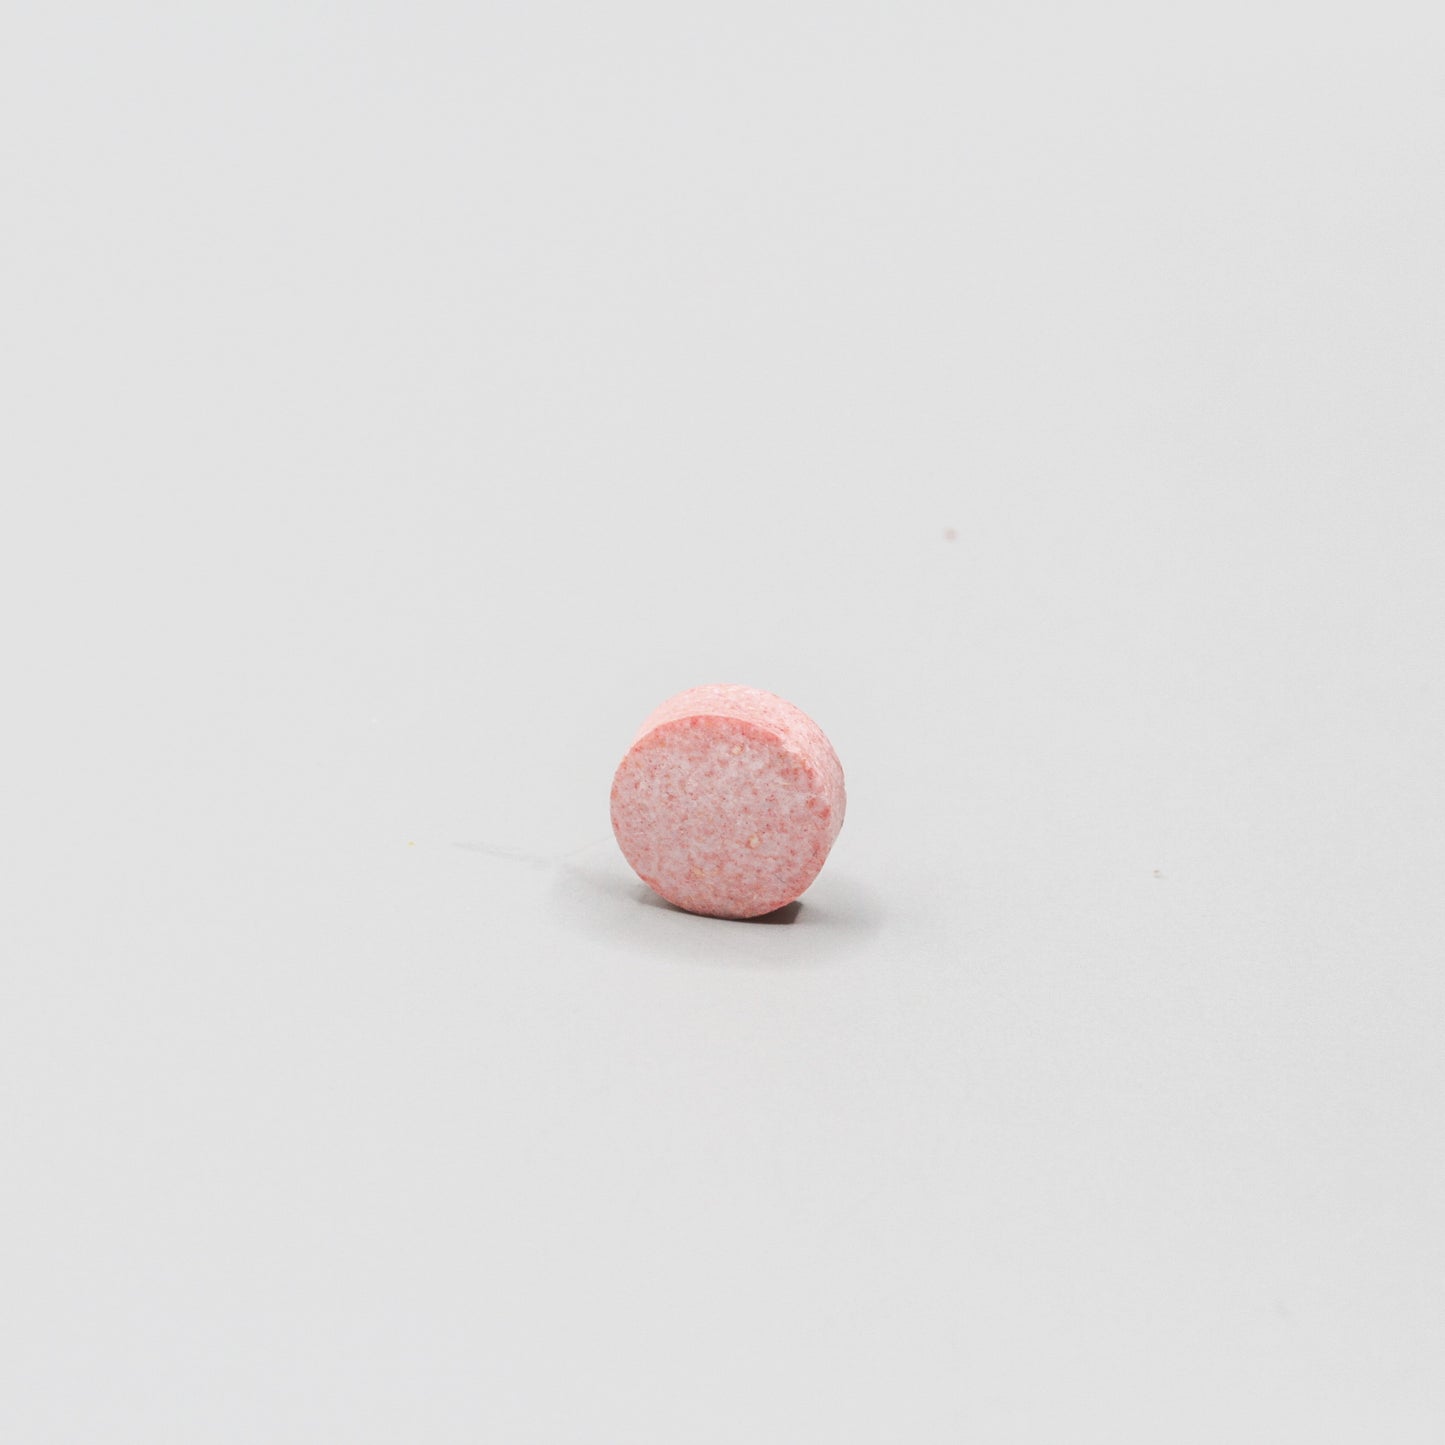 Round reddish pill